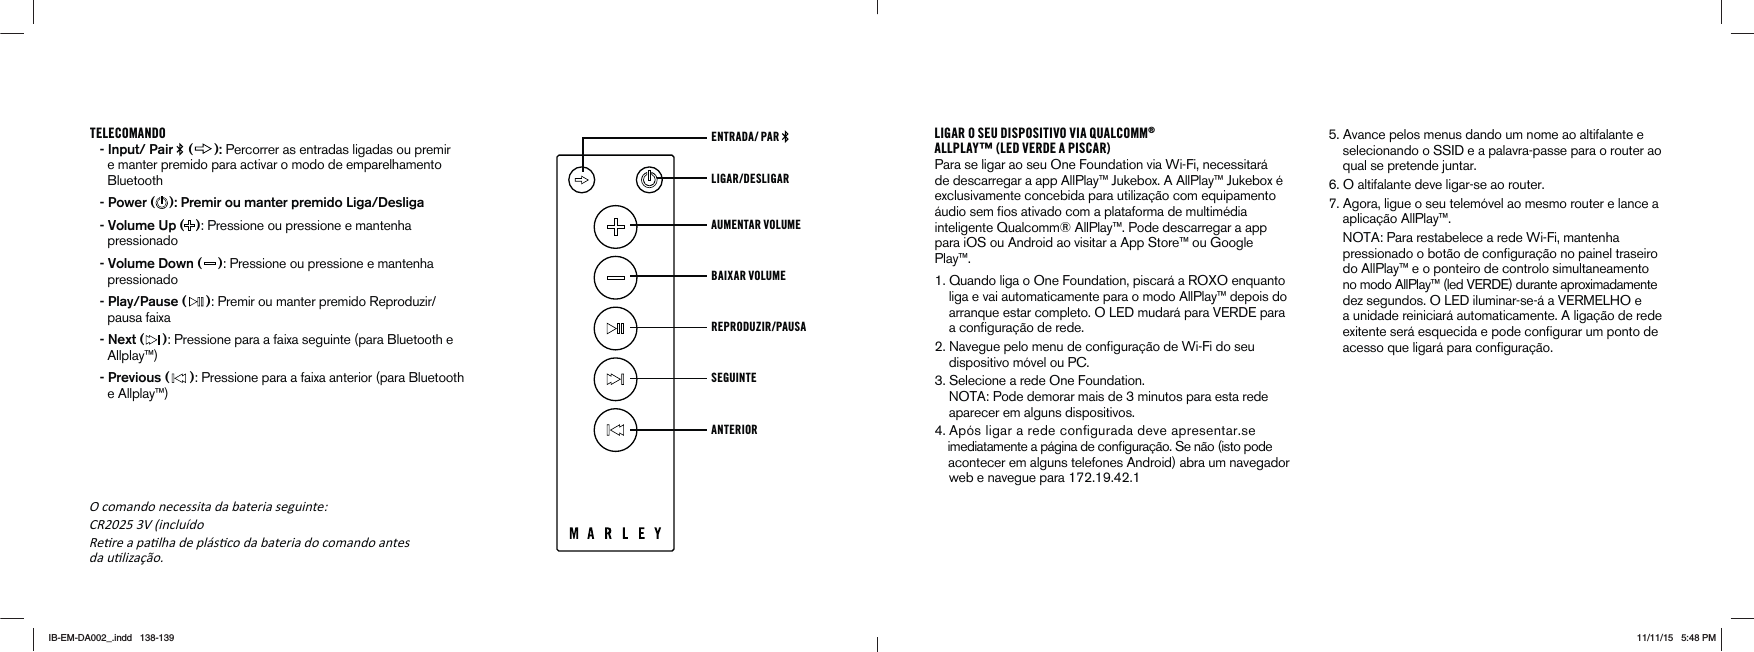 TELECOMANDO - Input/ Pair   ( ): Percorrer as entradas ligadas ou premir e manter premido para activar o modo de emparelhamento Bluetooth - Power ( ): Premir ou manter premido Liga/Desliga - Volume Up ( ): Pressione ou pressione e mantenha pressionado - Volume Down ( ): Pressione ou pressione e mantenha pressionado - Play/Pause ( )0REMIROUMANTERPREMIDO2EPRODUZIRpausa faixa - Next ( ): Pressione para a faixa seguinte (para Bluetooth e Allplay™) - Previous ( ): Pressione para a faixa anterior (para Bluetooth e Allplay™)LIGAR/DESLIGARENTRADA/ PAR AUMENTAR VOLUME BAIXAR VOLUMEREPRODUZIR/PAUSA SEGUINTEANTERIORLIGAR O SEU DISPOSITIVO VIA QUALCOMM®ALLPLAY™ (LED VERDE A PISCAR)Para se ligar ao seu One Foundation via Wi-Fi, necessitará de descarregar a app AllPlay™ Jukebox. A AllPlay™ Jukebox é exclusivamente concebida para utilização com equipamento ·UDIOSEMlOSATIVADOCOMAPLATAFORMADEMULTIM½DIAinteligente Qualcomm® AllPlay™. Pode descarregar a app para iOS ou Android ao visitar a App Store™ ou Google Play™. 1UANDOLIGAO/NE&amp;OUNDATIONPISCAR·A2/8/ENQUANTO    liga e vai automaticamente para o modo AllPlay™ depois do  ARRANQUEESTARCOMPLETO/,%$MUDAR·PARA6%2$%PARAACONlGURA¼ODEREDE .AVEGUEPELOMENUDECONlGURA¼ODE7I&amp;IDOSEU     dispositivo móvel ou PC. 3ELECIONEAREDE/NE&amp;OUNDATION ./4!0ODEDEMORARMAISDEMINUTOSPARAESTAREDE    aparecer em alguns dispositivos. !PÆSLIGARAREDECONlGURADADEVEAPRESENTARSE IMEDIATAMENTEAP·GINADECONlGURA¼O3EN¼OISTOPODE    acontecer em alguns telefones Android) abra um navegador  WEBENAVEGUEPARA!VANCEPELOSMENUSDANDOUMNOMEAOALTIFALANTEESELECIONANDOO33)$EAPALAVRAPASSEPARAOROUTERAO    qual se pretende juntar.  6. O altifalante deve ligar-se ao router.  7. Agora, ligue o seu telemóvel ao mesmo router e lance a      aplicação AllPlay™.      NOTA: Para restabelece a rede Wi-Fi, mantenha      PRESSIONADOOBOT¼ODECONlGURA¼ONOPAINELTRASEIRO    do AllPlay™ e o ponteiro de controlo simultaneamento  NOMODO!LL0LAYLED6%2$%DURANTEAPROXIMADAMENTEDEZSEGUNDOS/,%$ILUMINARSE·A6%2-%,(/E    a unidade reiniciará automaticamente. A ligação de rede EXITENTESER·ESQUECIDAEPODECONlGURARUMPONTODEACESSOQUELIGAR·PARACONlGURA¼OK comando necessita da bateria seguinte͗ CR2025 3V (incluído ReƟre a paƟlha de plásƟco da bateria do comando antesda uƟlizaĕĆo.IB-EM-DA002_.indd   138-139 11/11/15   5:48 PM